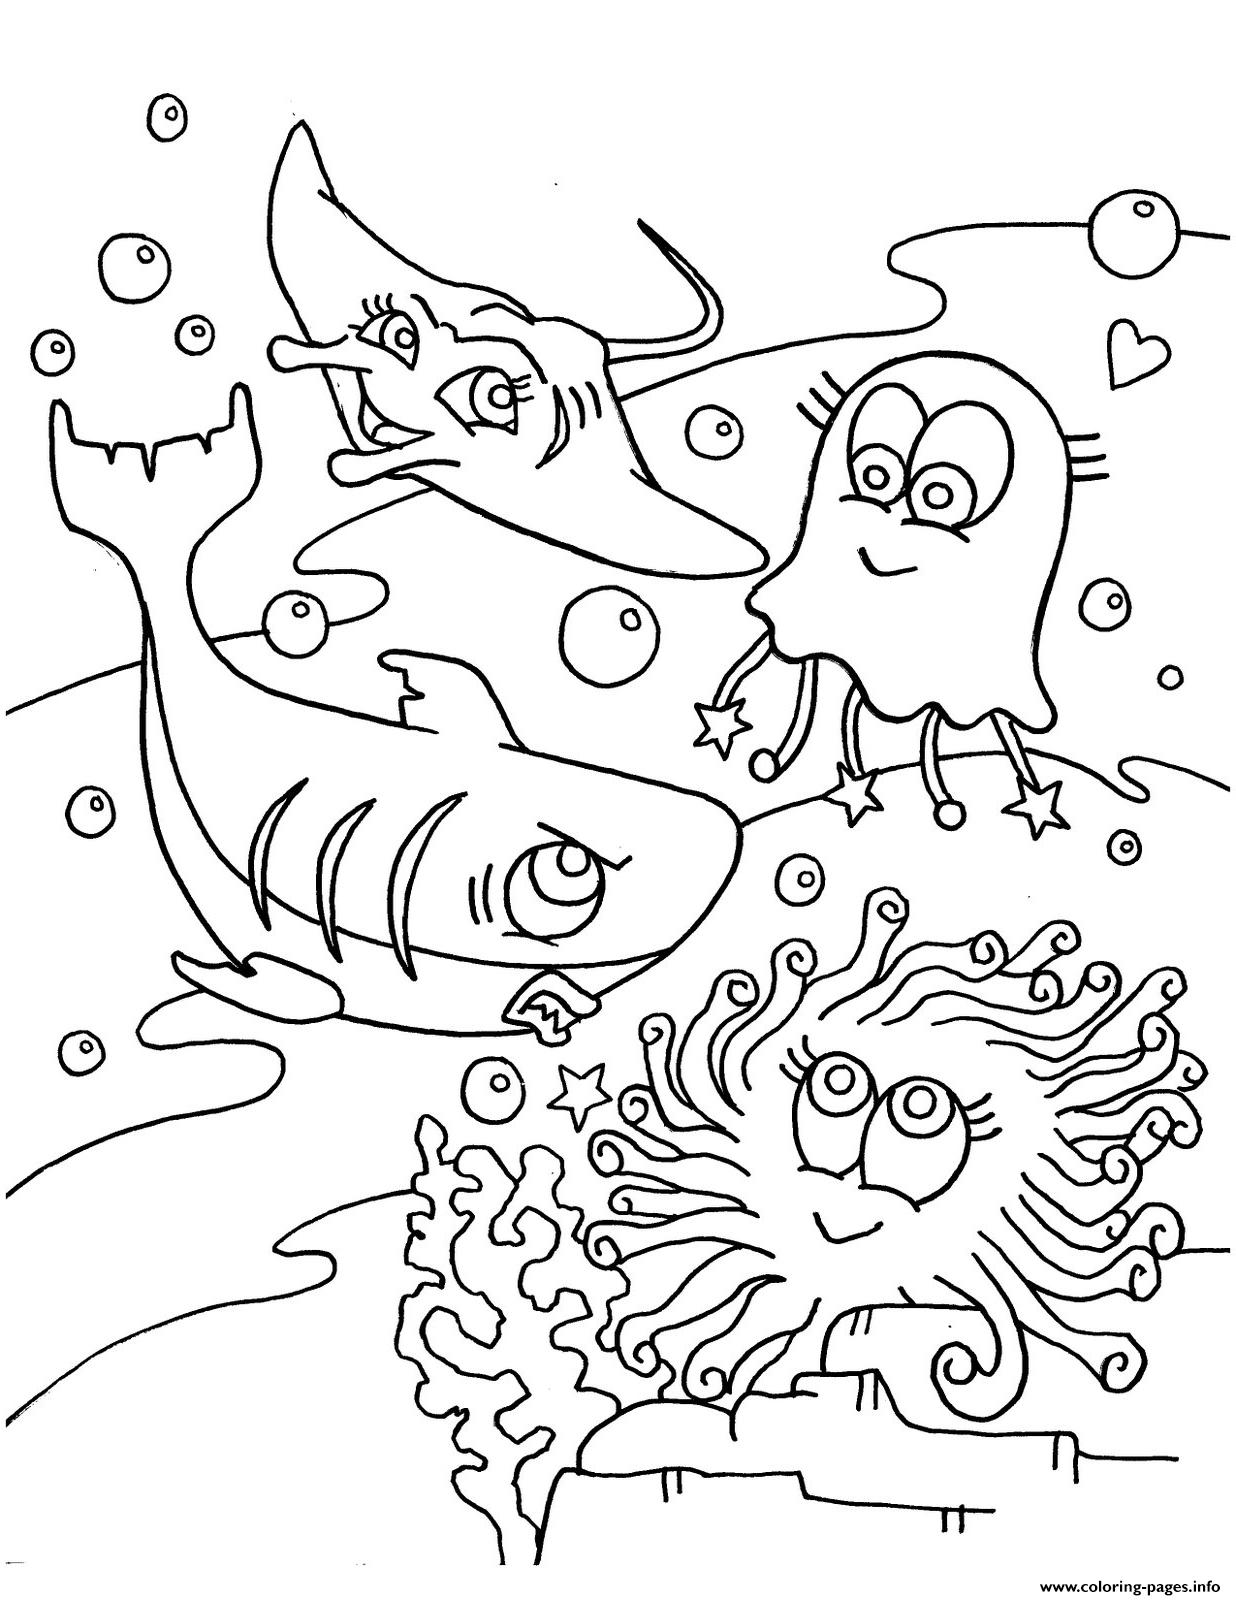 Cute S Of Sea Animals8e91 coloring